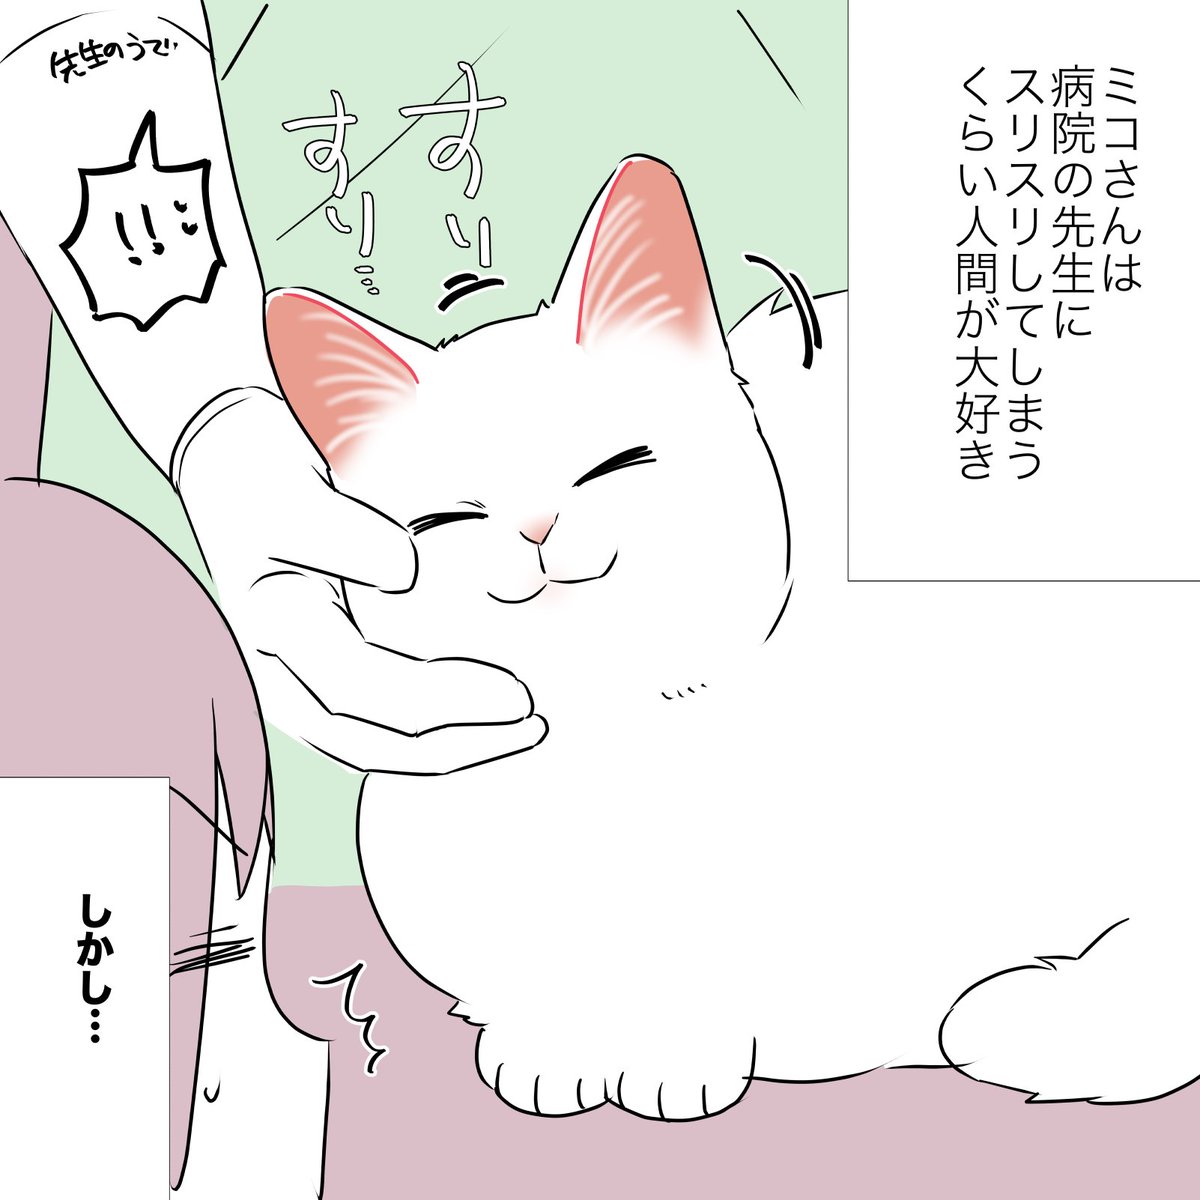 猫の心、難し〜〜〜〜!!!!!って話(1/2)  #漫画が読めるハッシュタグ #愛されたがりの白猫ミコさん